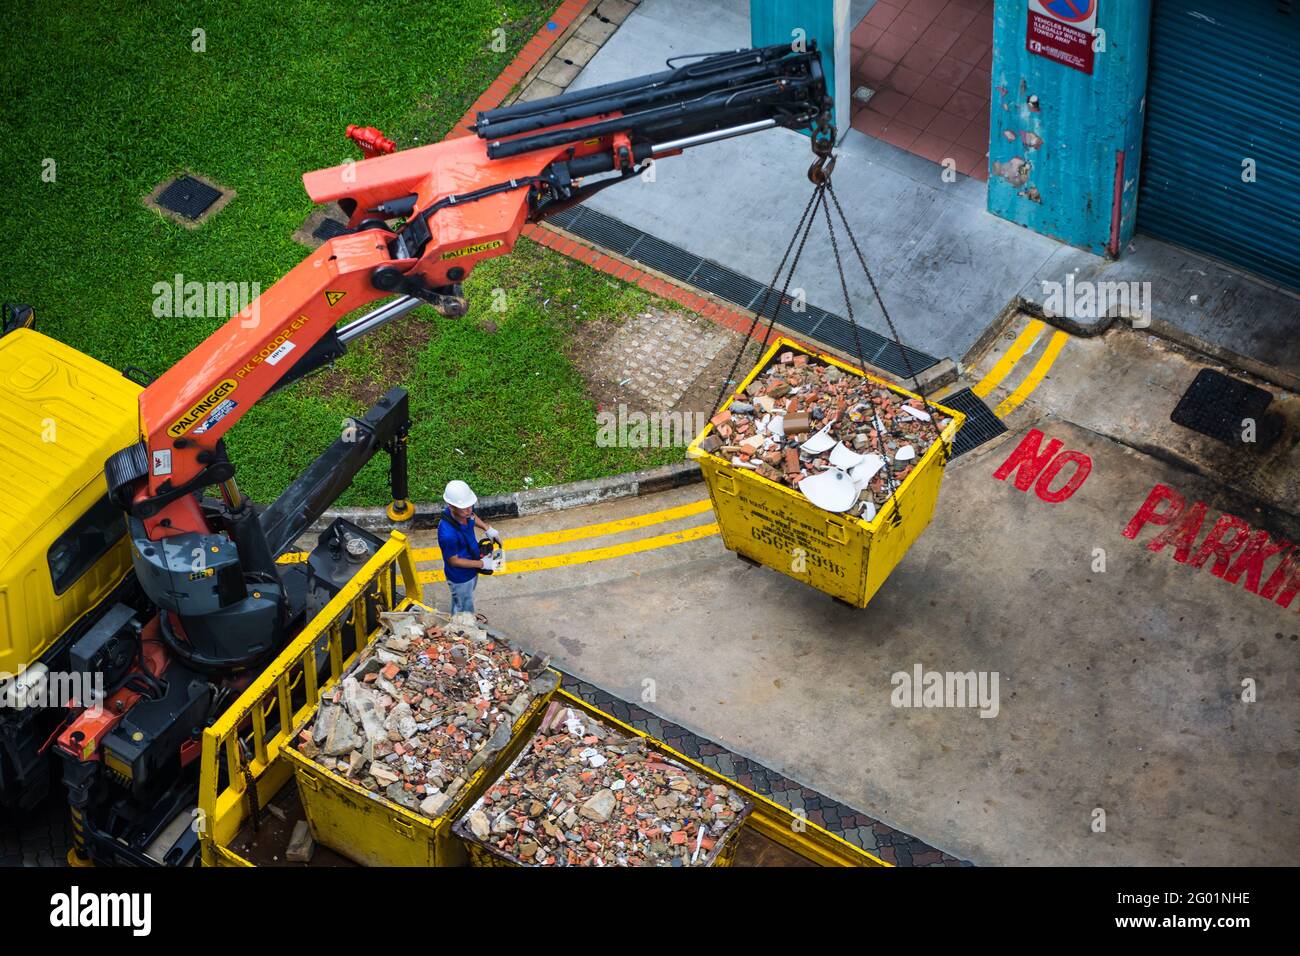 Vue aérienne d'un opérateur d'une seule personne pour soulever et déplacer les conteneurs industriels lourds à l'arrière du camion. Banque D'Images